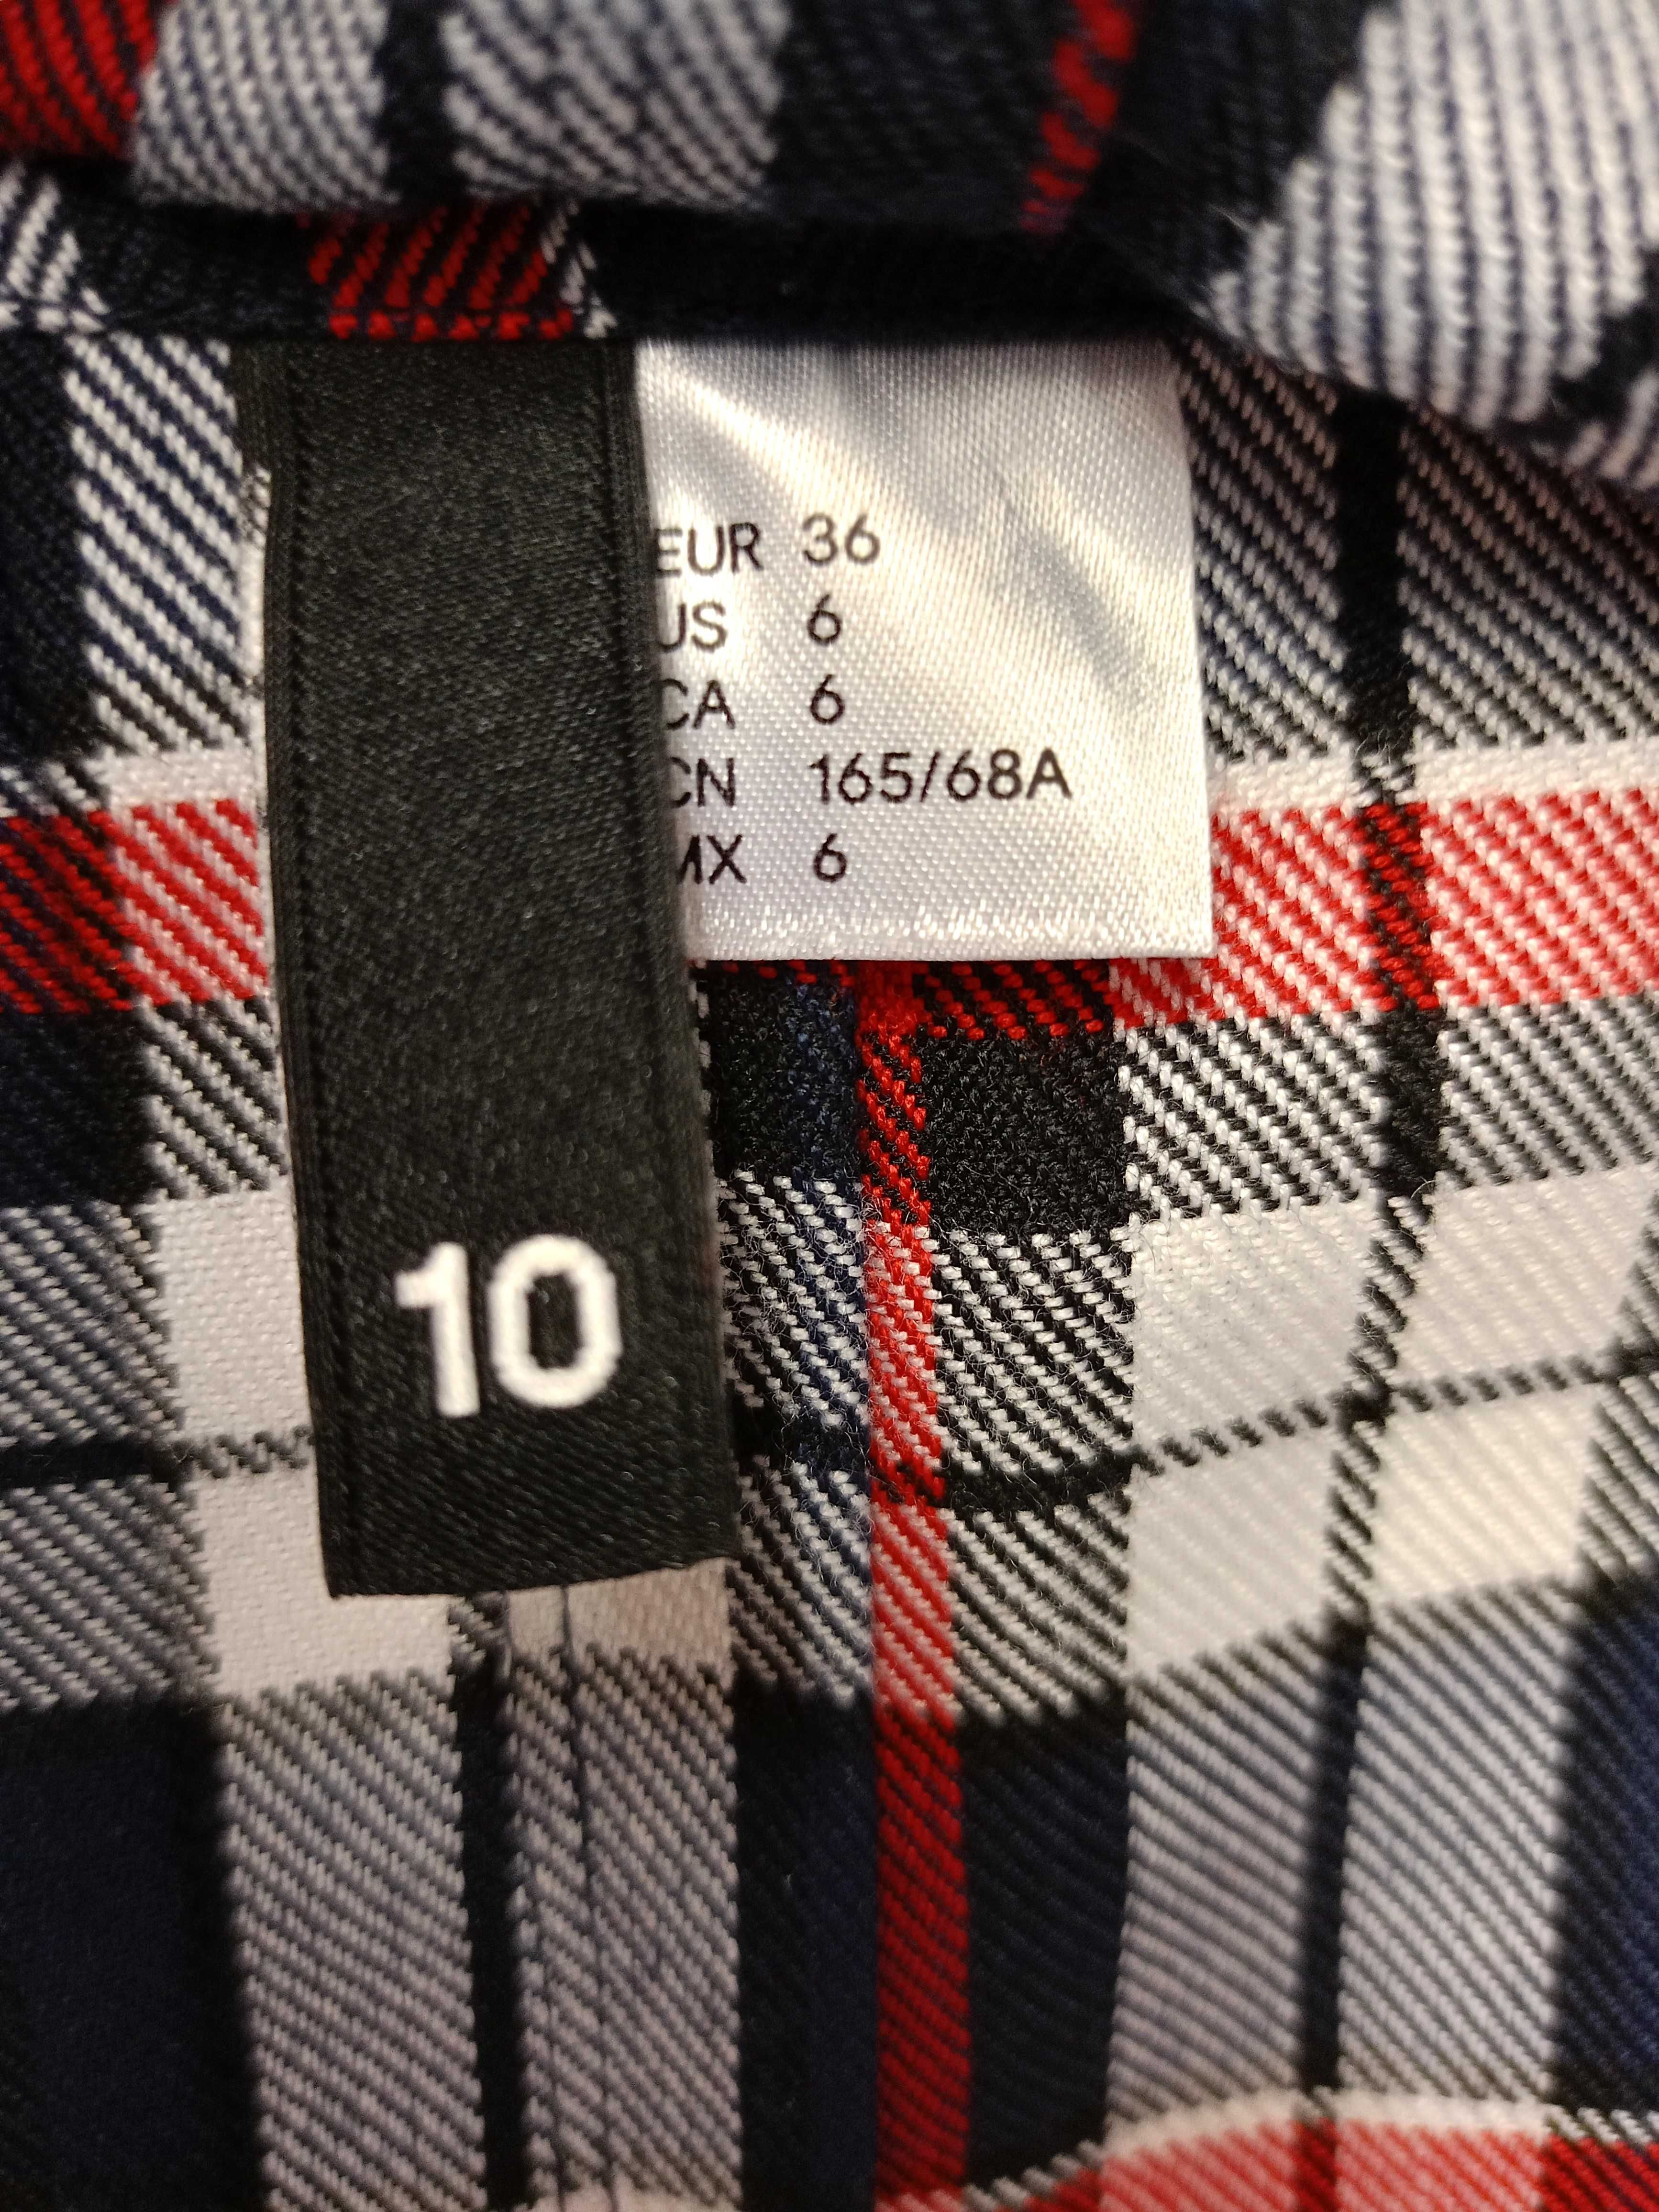 Spódniczka plisowana kratka H&M rozmiar 36 S dla dziewczynki 156 164